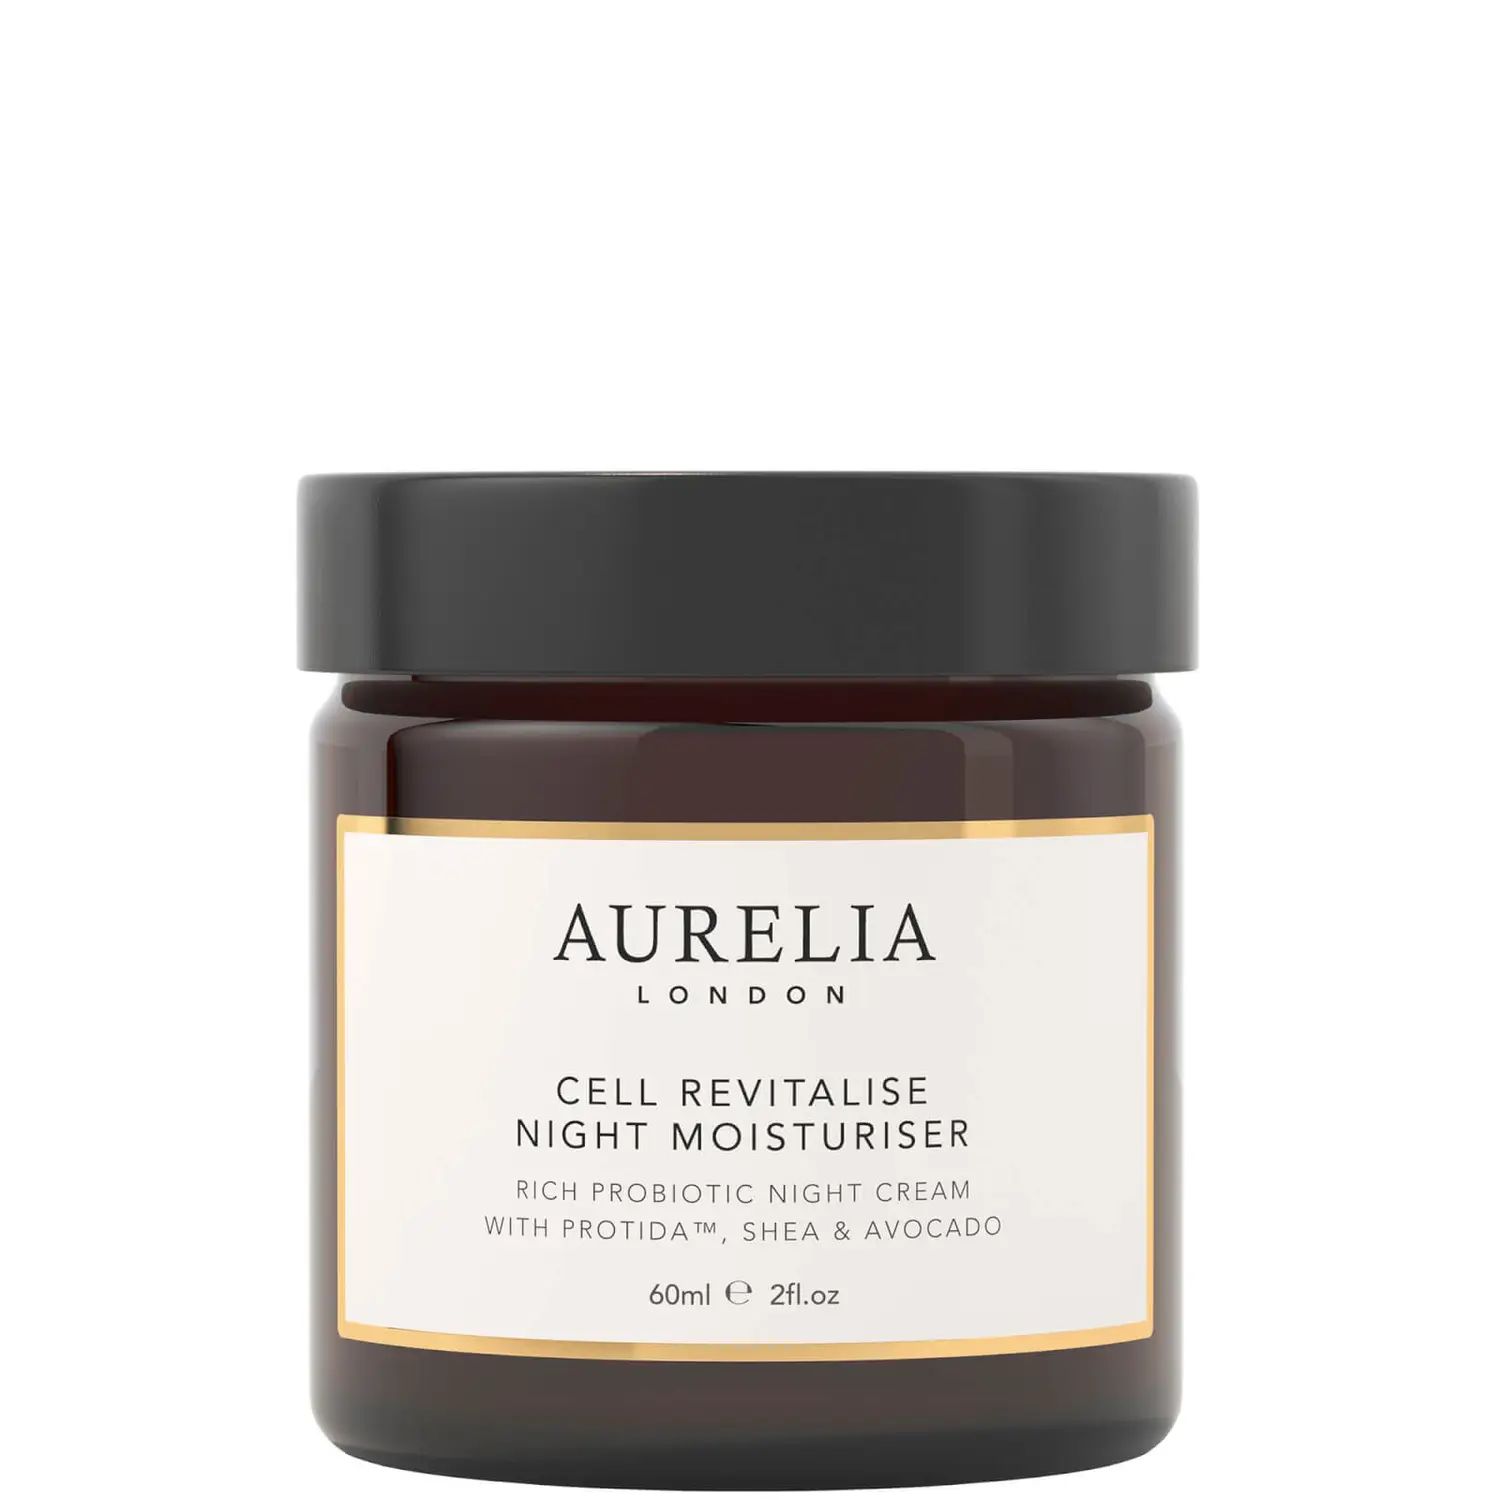 Aurelia London Cell Revitalise Night Moisturiser 60ml | Look Fantastic (ROW)